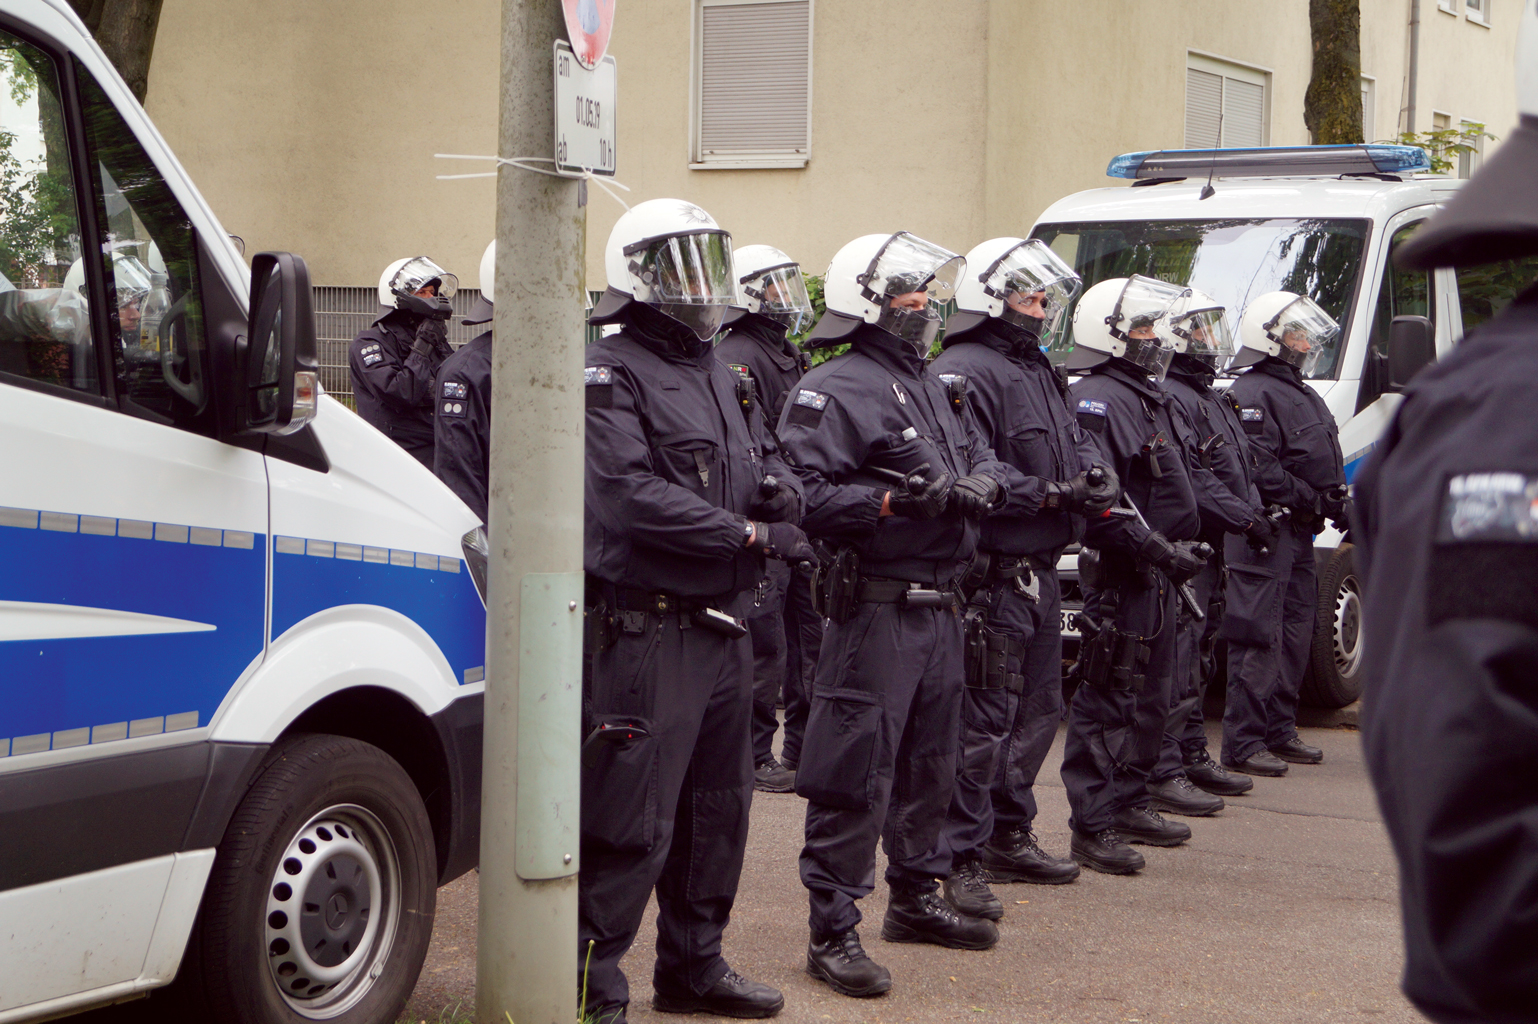 Bochumerin klagte  Polizei an